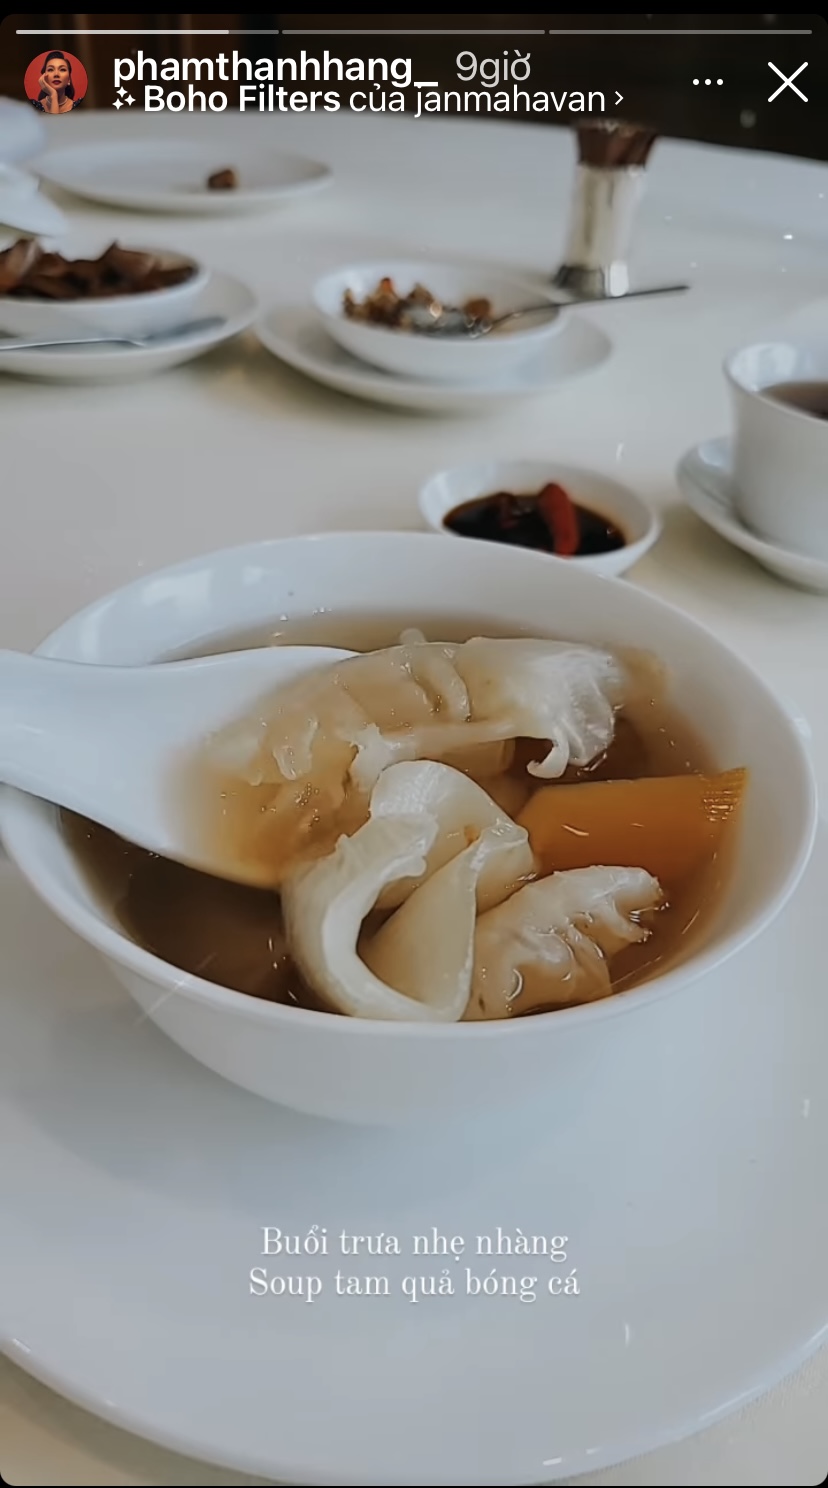 Bữa trưa của siêu mẫu Thanh Hằng khá nhẹ nhàng bên một bát súp tam quả bóng cá cầu kỳ, bổ dưỡng.